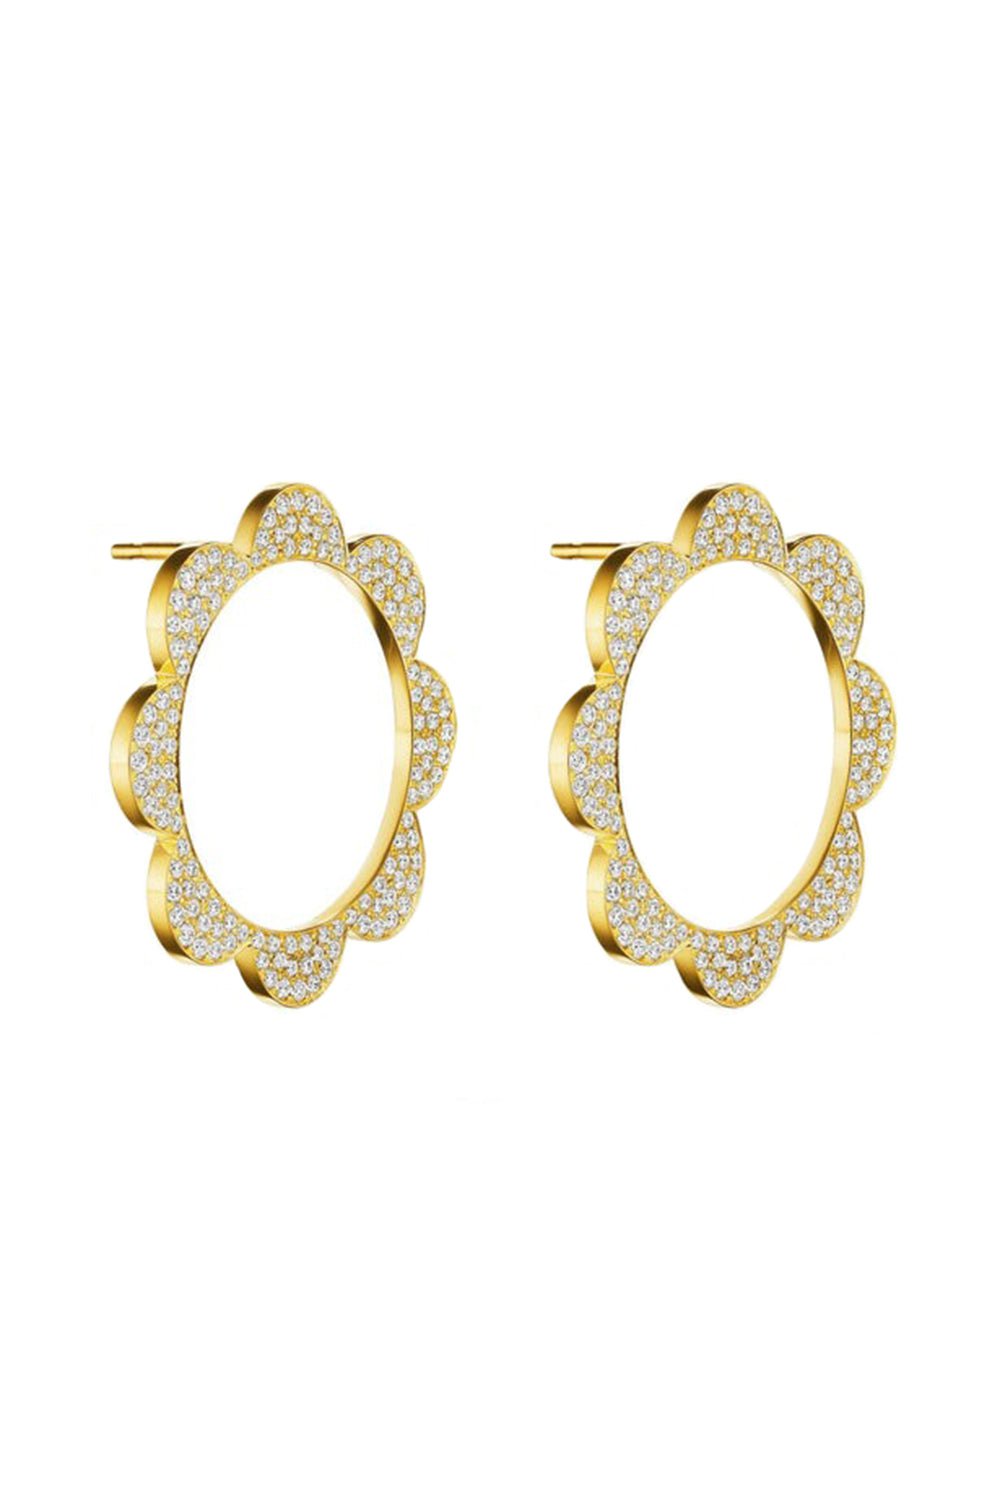 CADAR-Triplet Diamond Stud Earrings-YELLOW GOLD